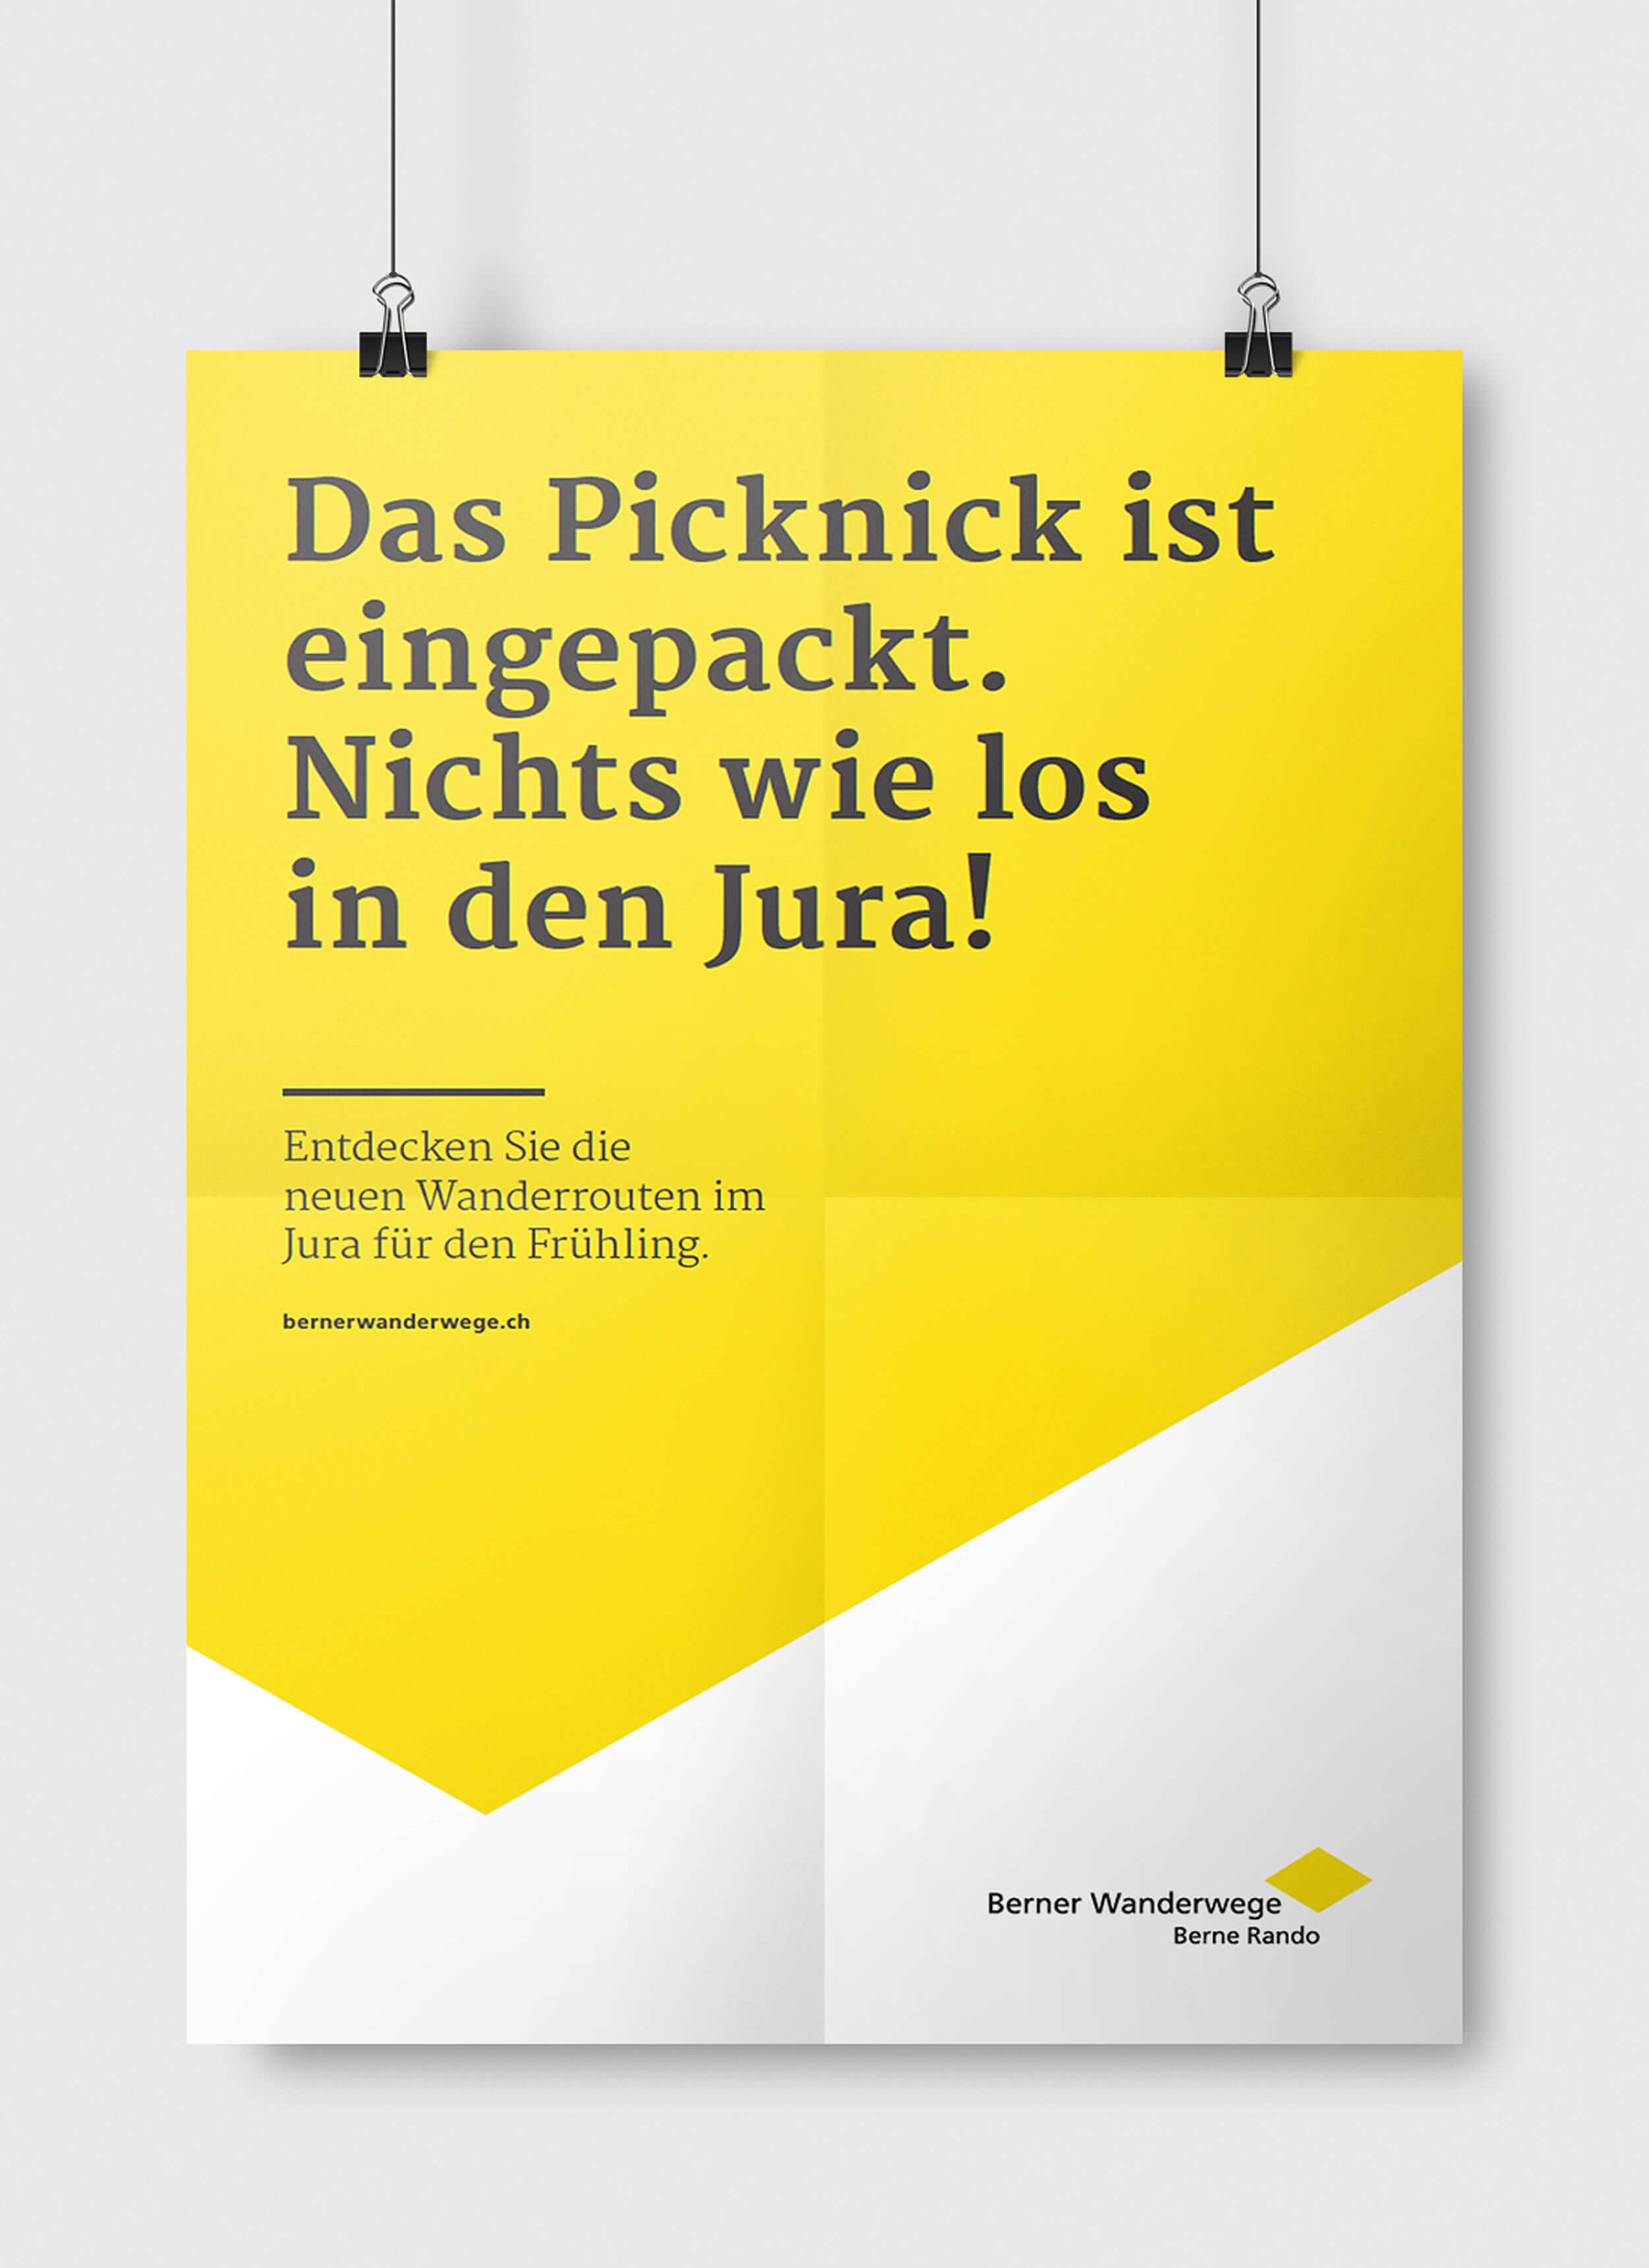 Auf einem gelben Poster der Berner Wanderwege steht: «Das Picknick ist eingepackt. Nichts wie los in den Jura!» Und in kleinerer Schrift darunter: «Entdecken Sie die neuen Wanderrouten im Jura für den Frühling.»